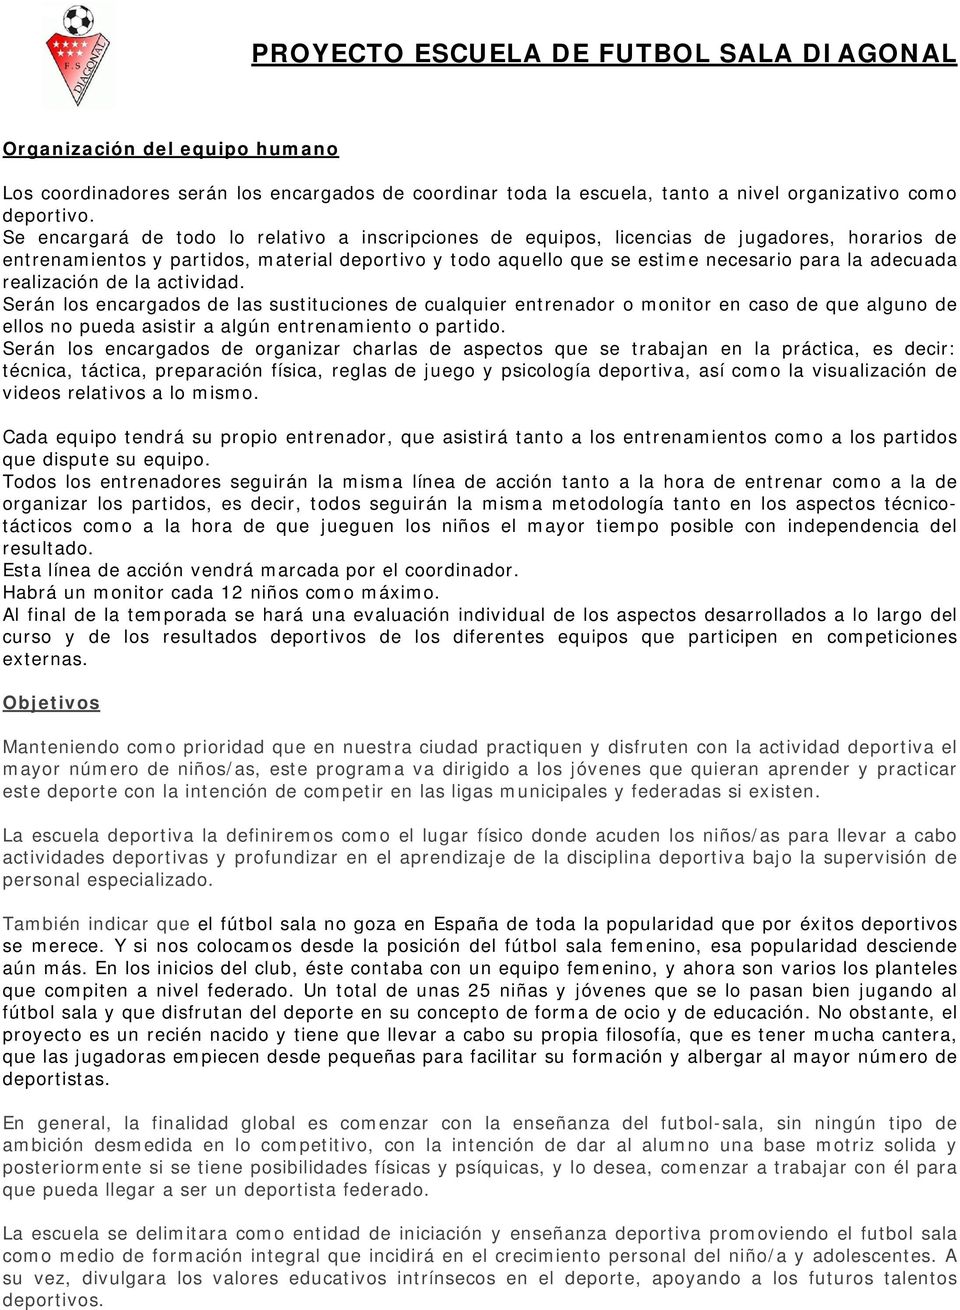 PROYECTO ESCUELA DE FUTBOL SALA DIAGONAL - PDF Free Download